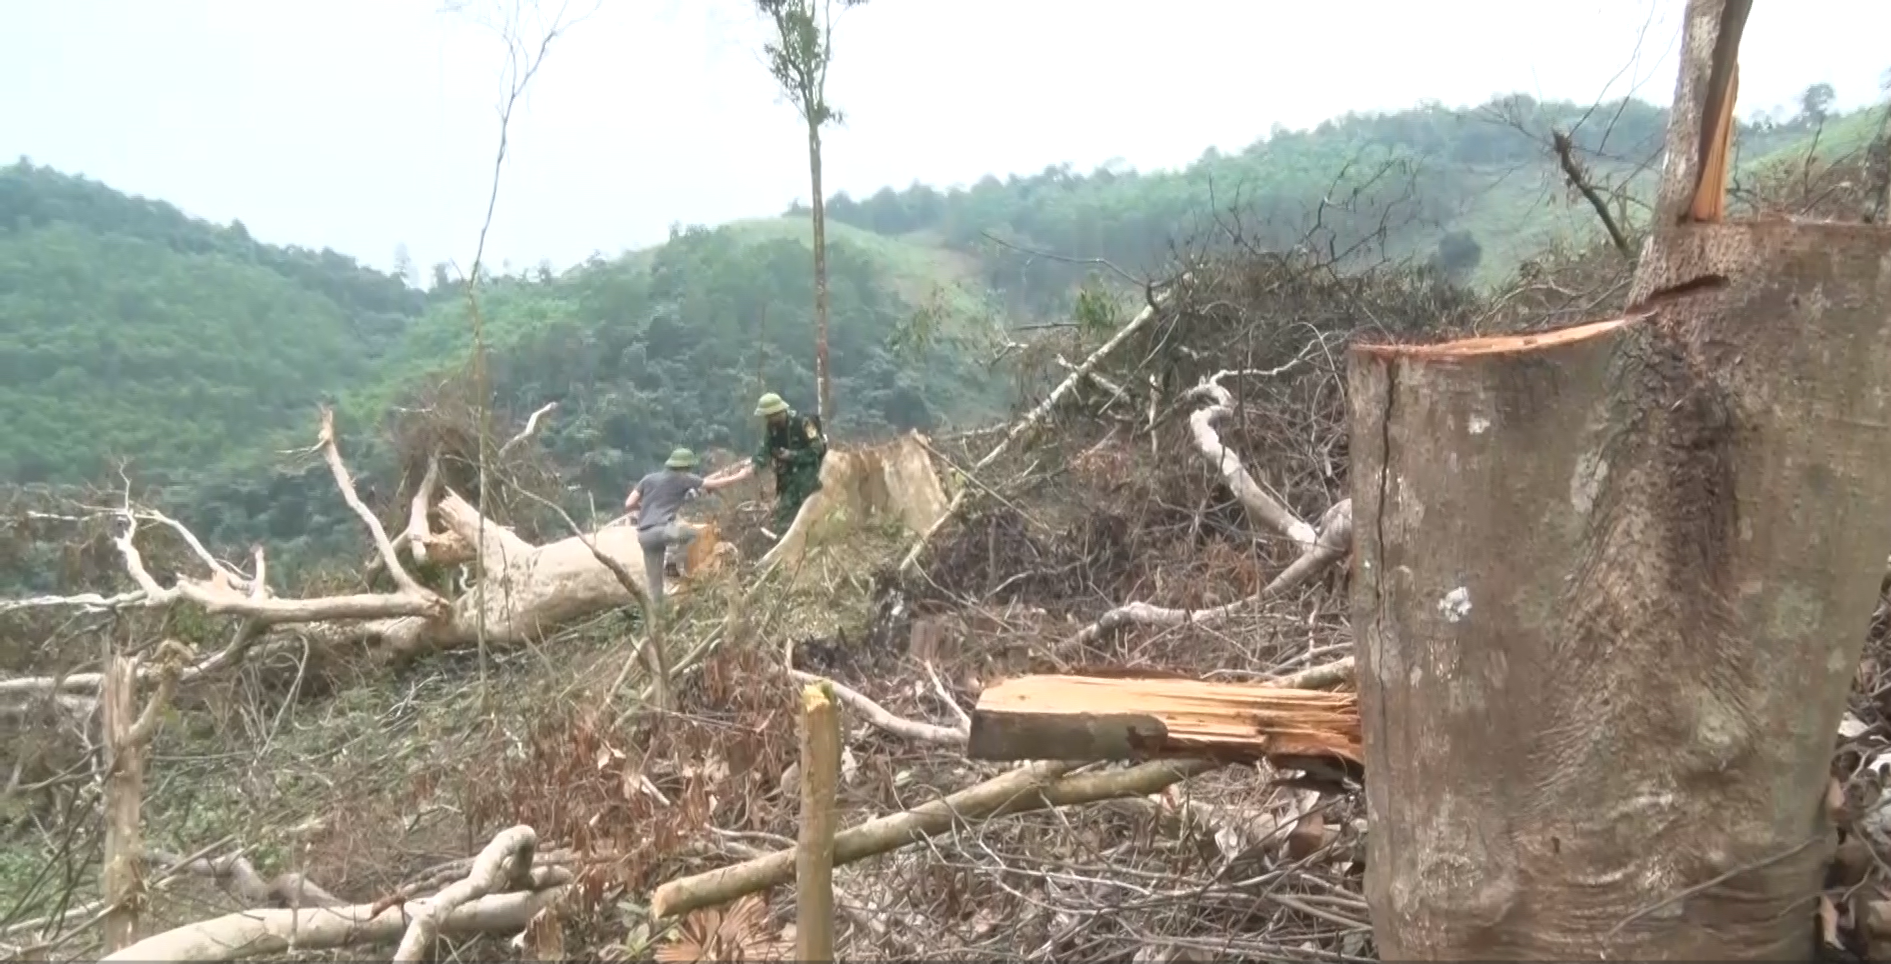 Sẽ kiểm điểm trách nhiệm kiểm lâm sau vụ phá rừng ở Quảng Bình - Ảnh 5.